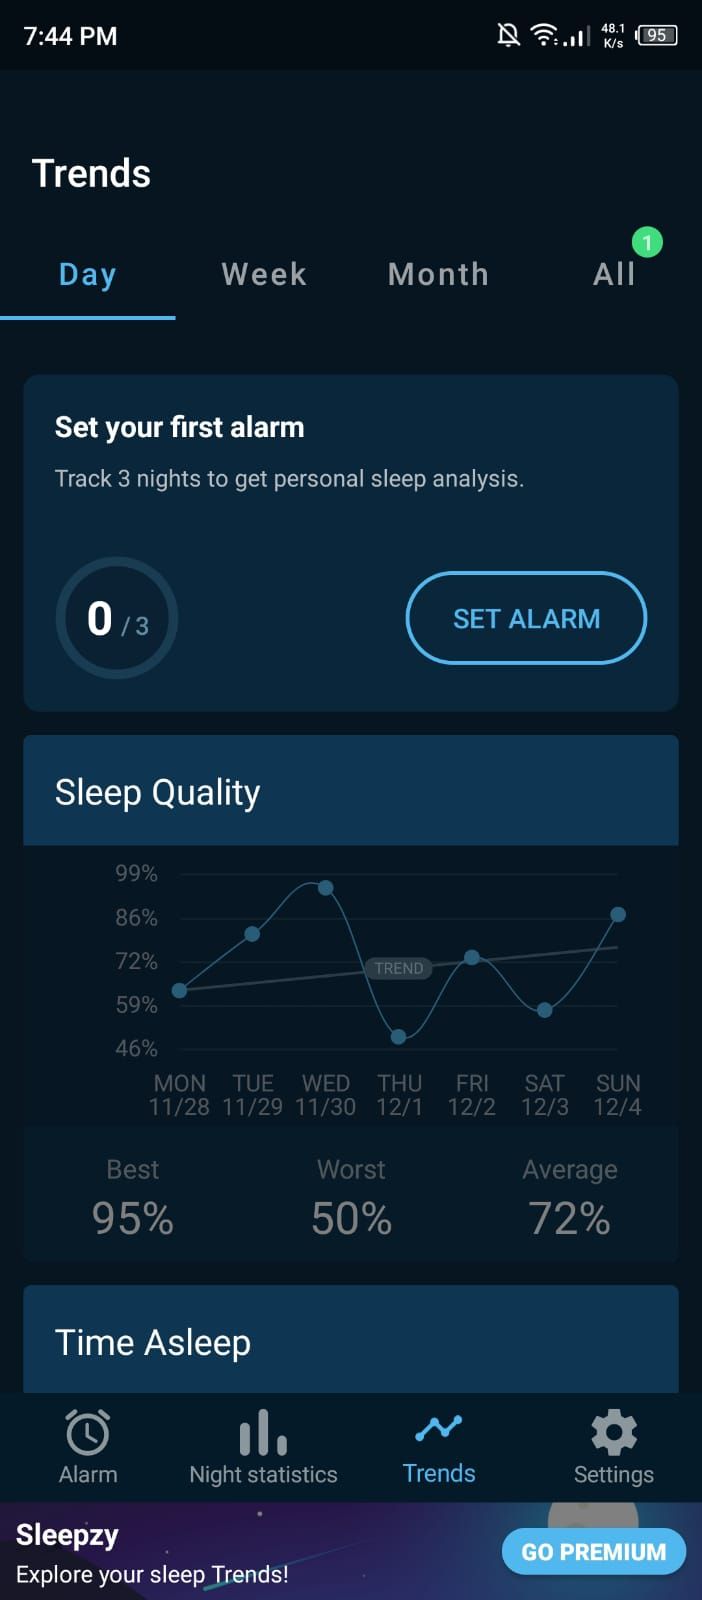 Sleepzy - Sleep Trends